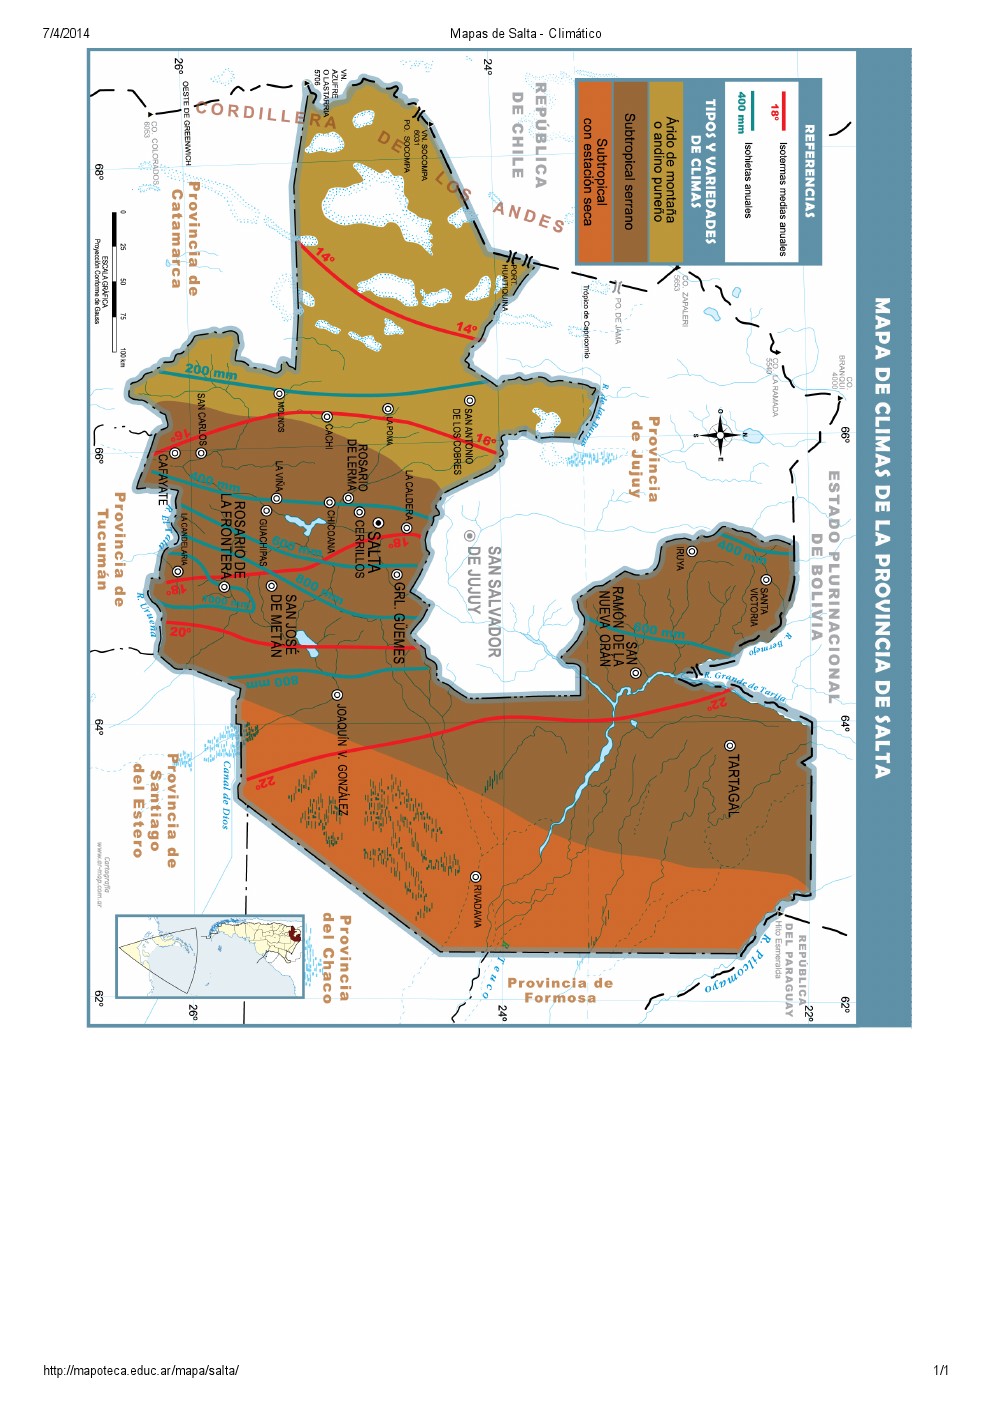 Mapa climático de Salta. Mapoteca de Educ.ar